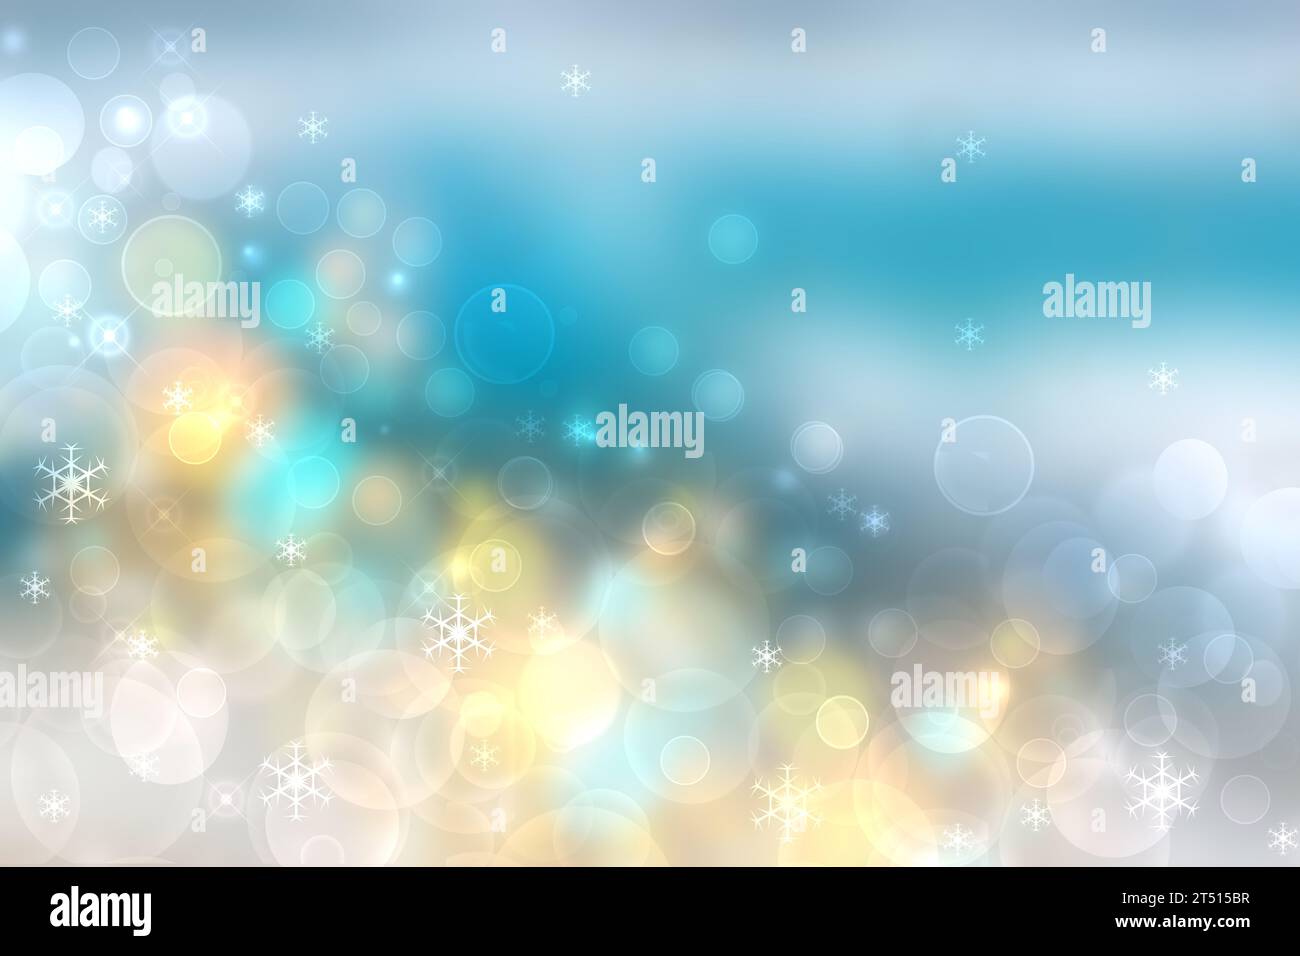 Joyeux Noël et joyeux nouvel an conception de texture de fond de carte avec des étoiles lumineuses bokeh abstraites à l'océan tropical ou fond de mer. Espace de copie. Banque D'Images